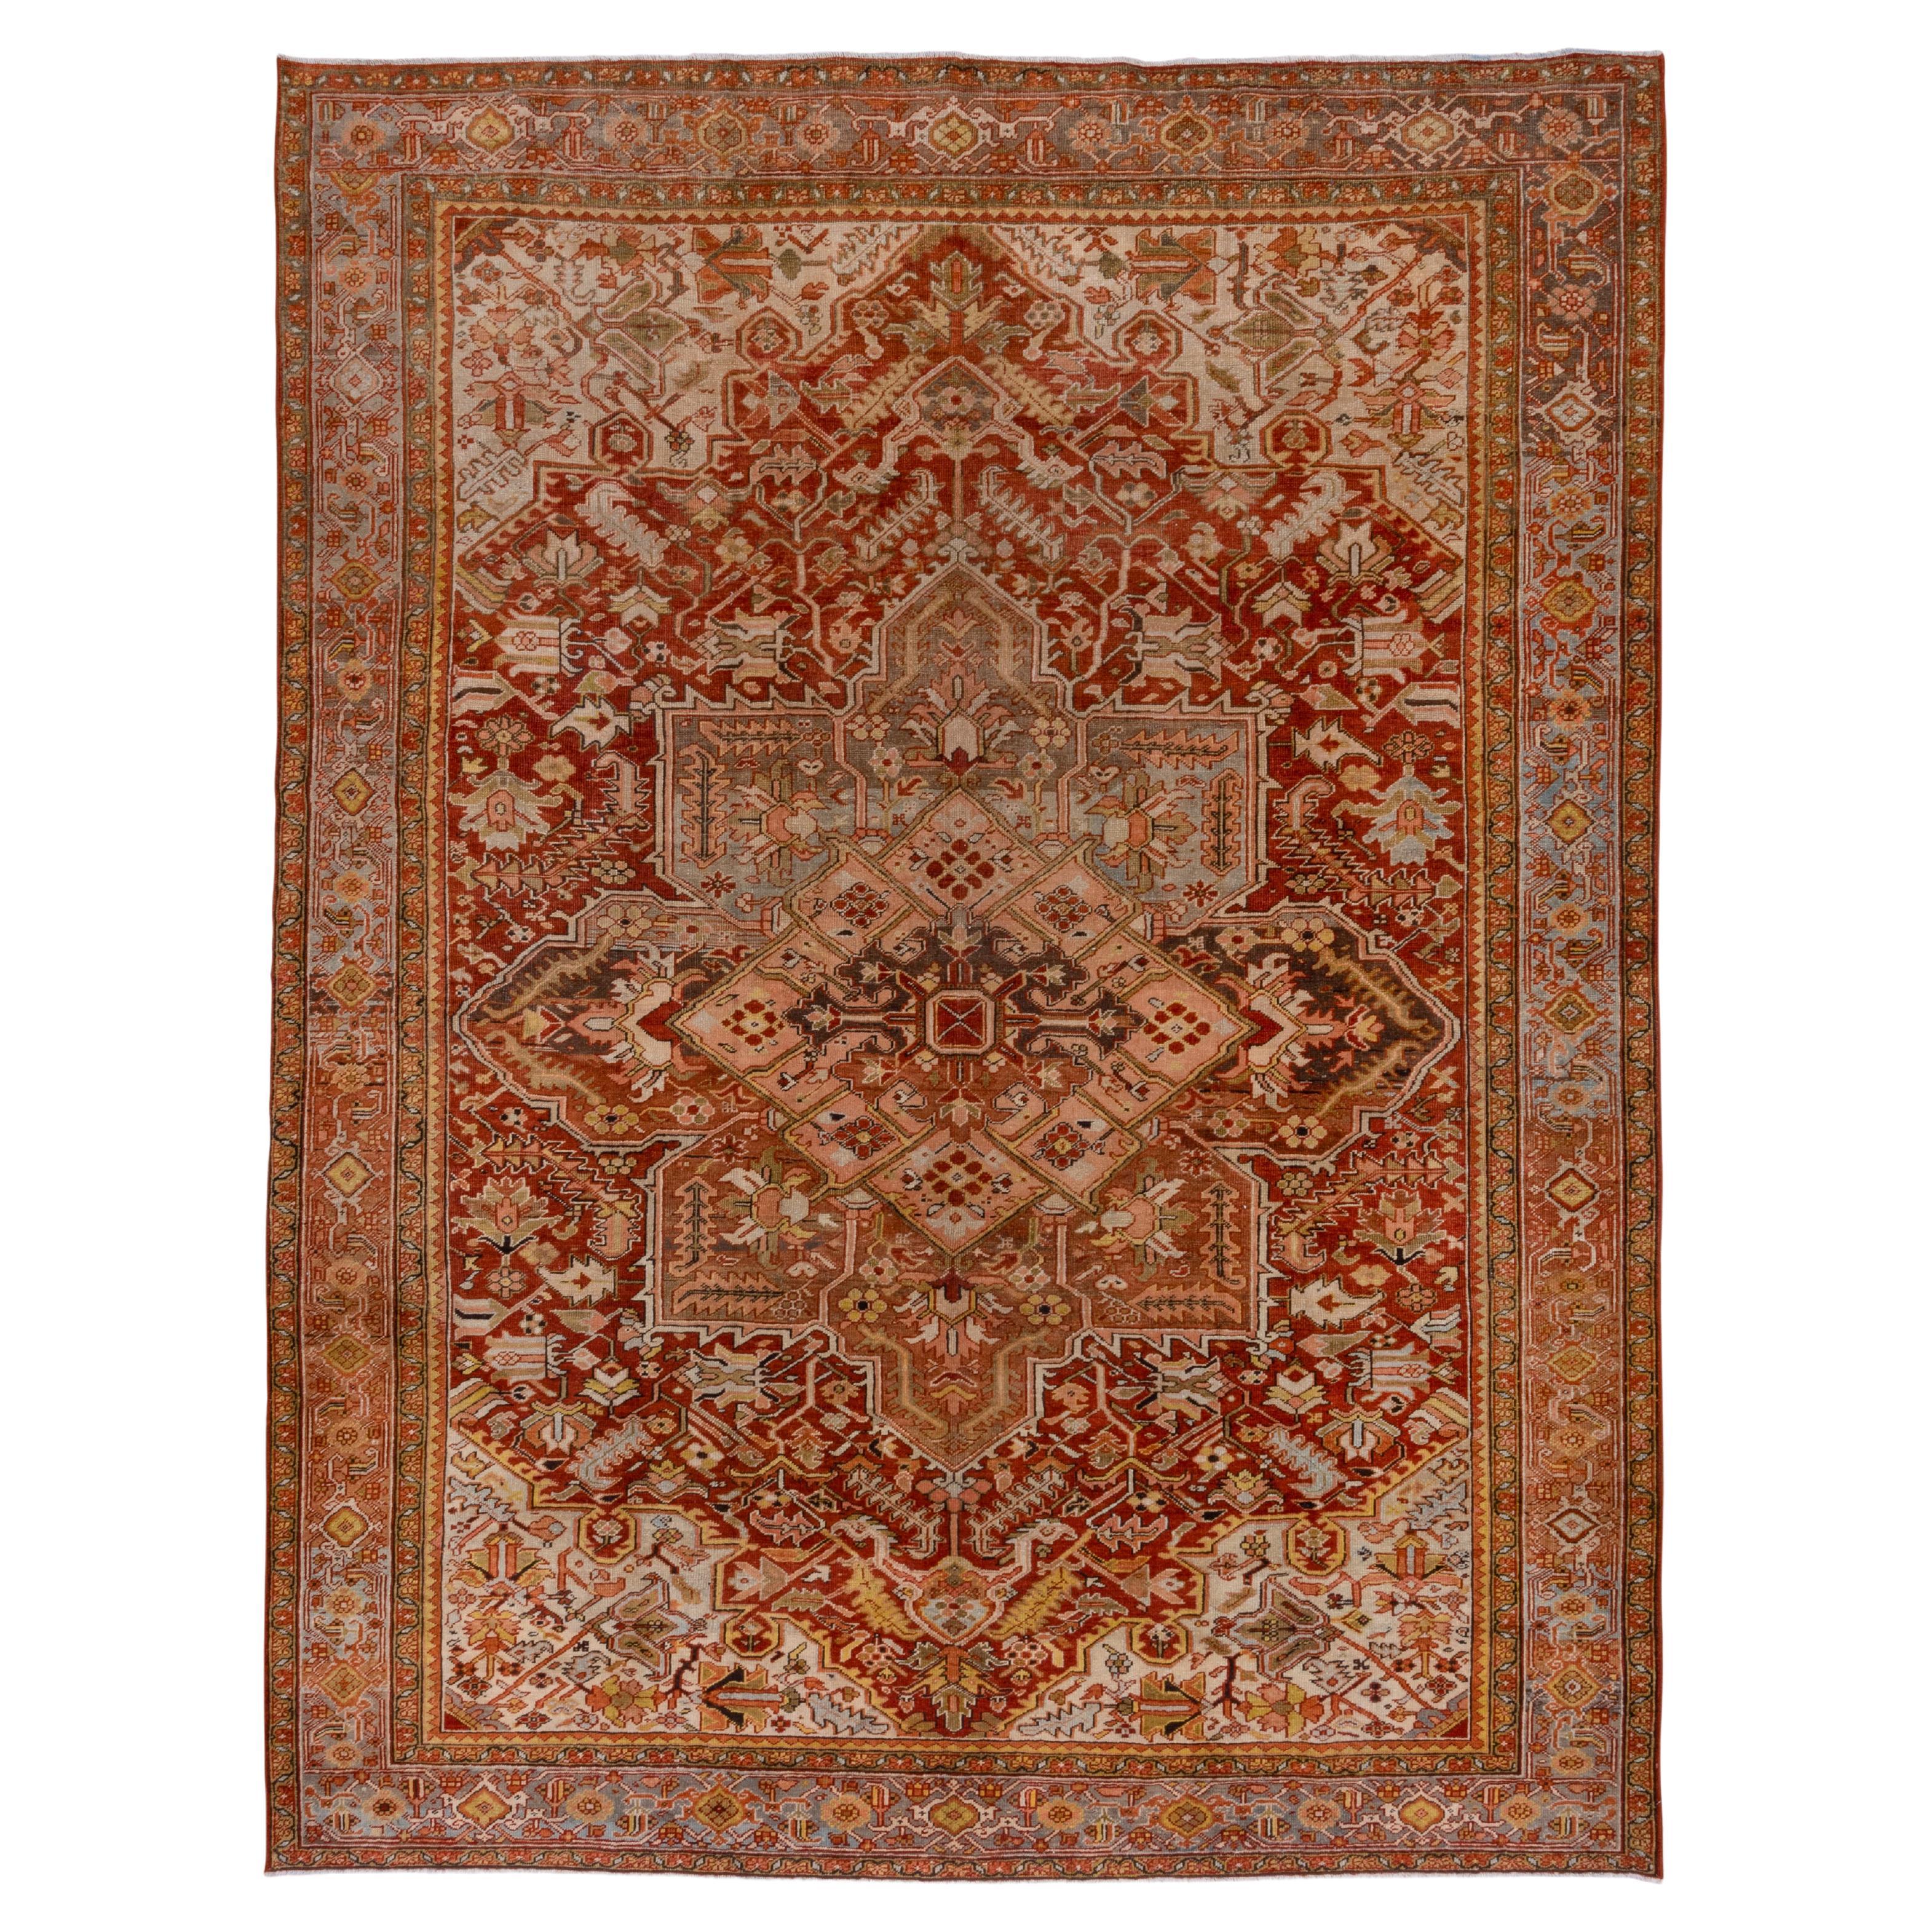 Antiker persischer Heriz-Teppich, dunkelrotes und rostfarbenes Feld, gelbe und korallenrote Akzente